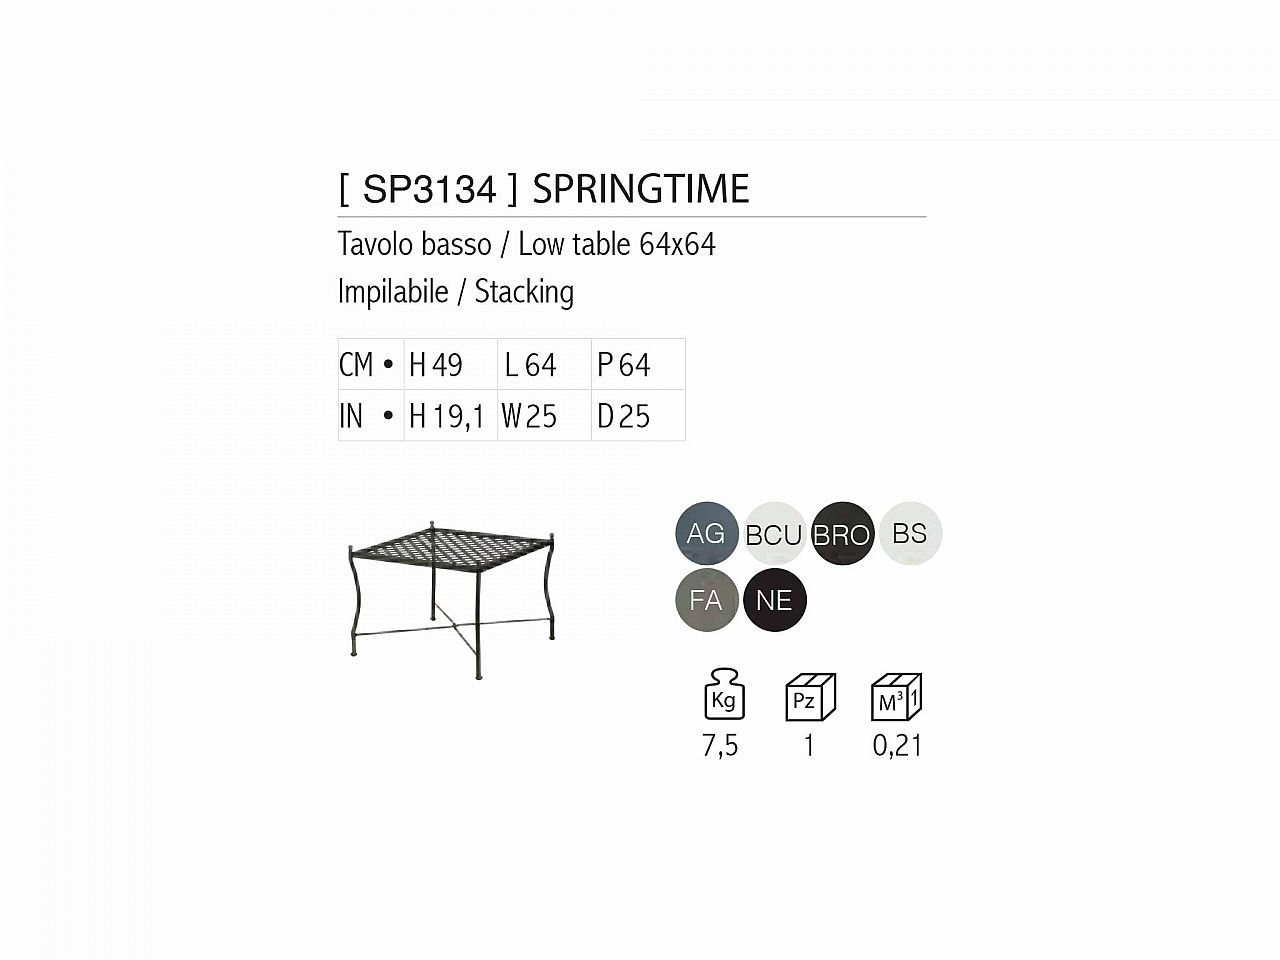 Tavolino Springtime - 1